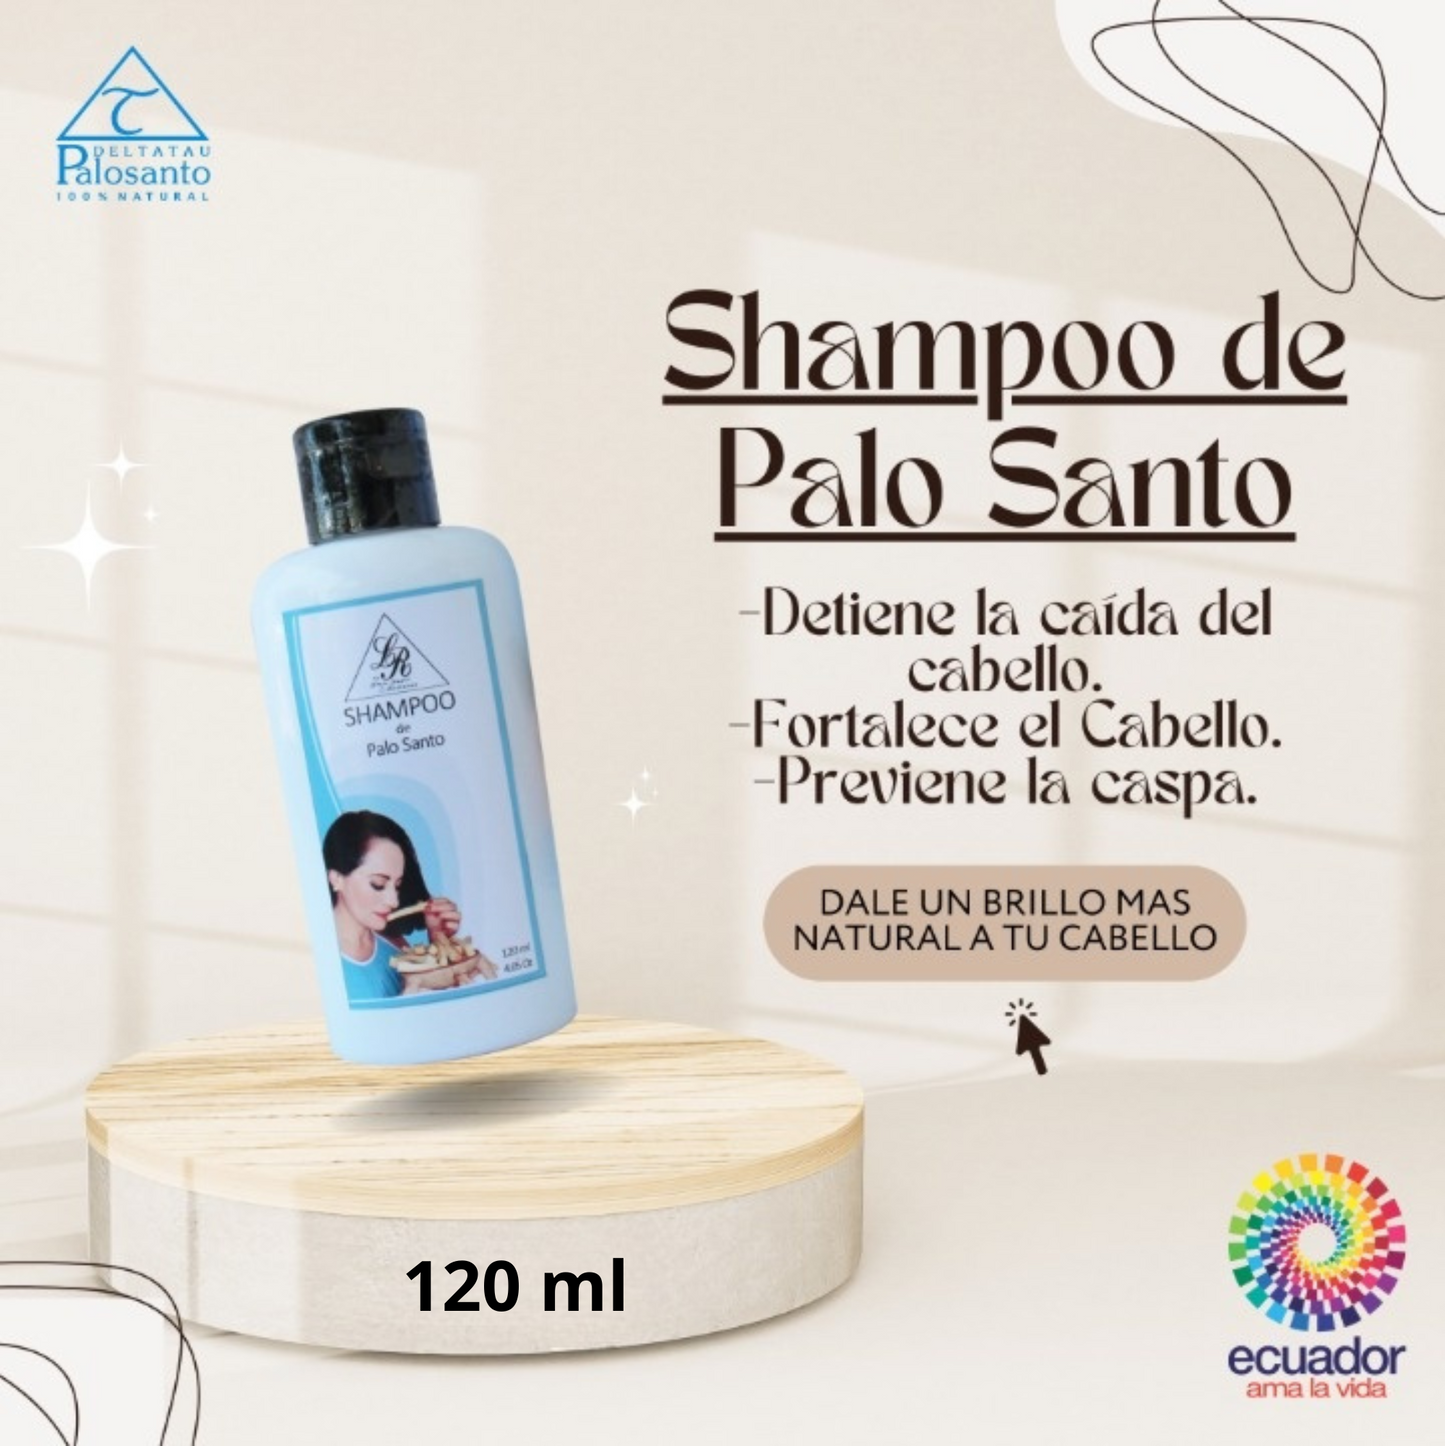 Shampoo de Palo Santo